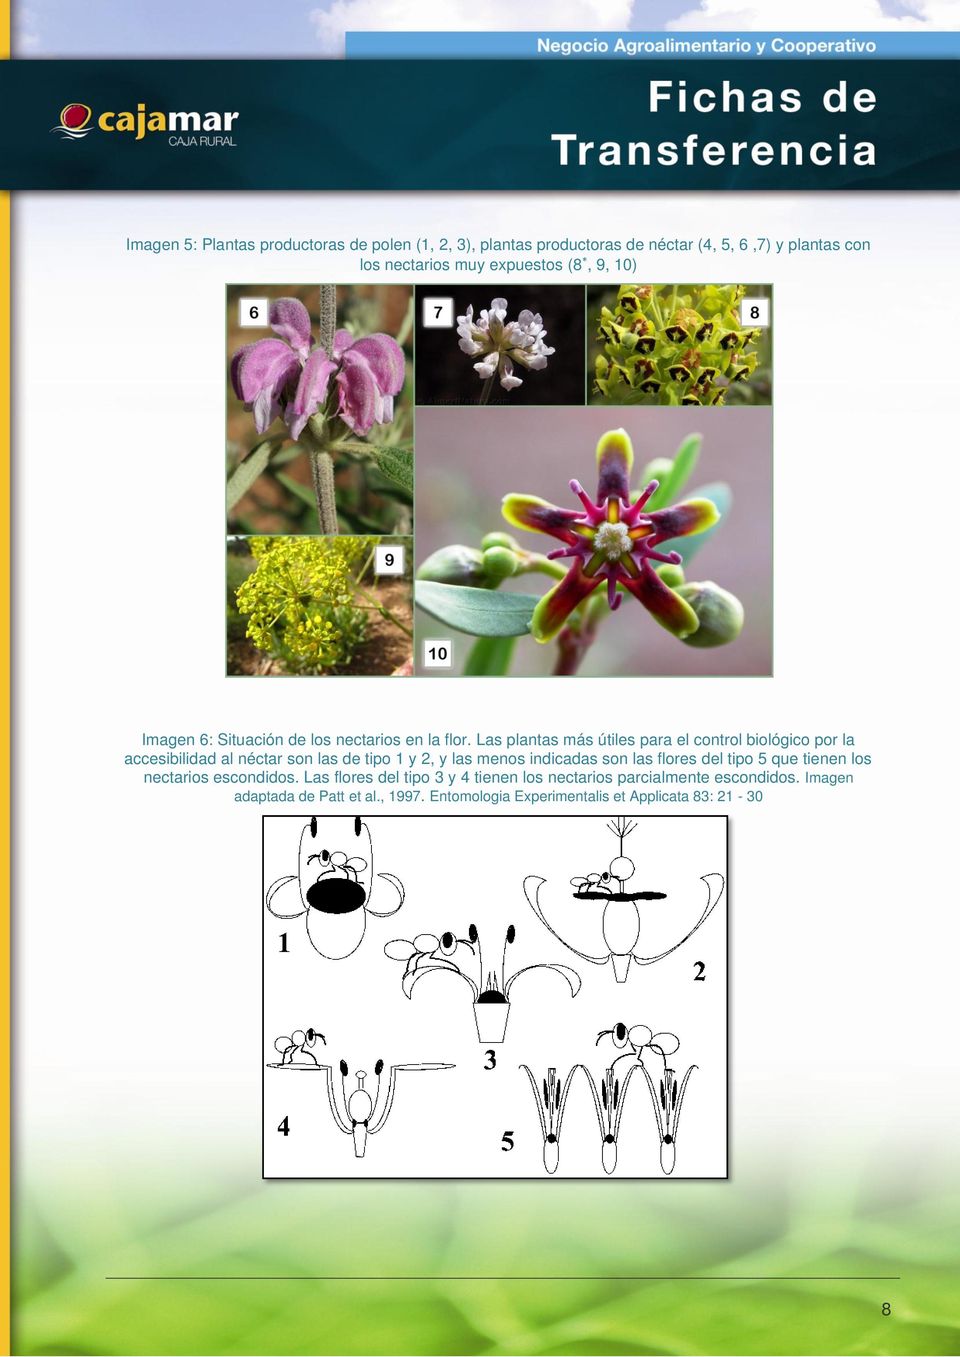 Las plantas más útiles para el control biológico por la accesibilidad al néctar son las de tipo 1 y 2, y las menos indicadas son las